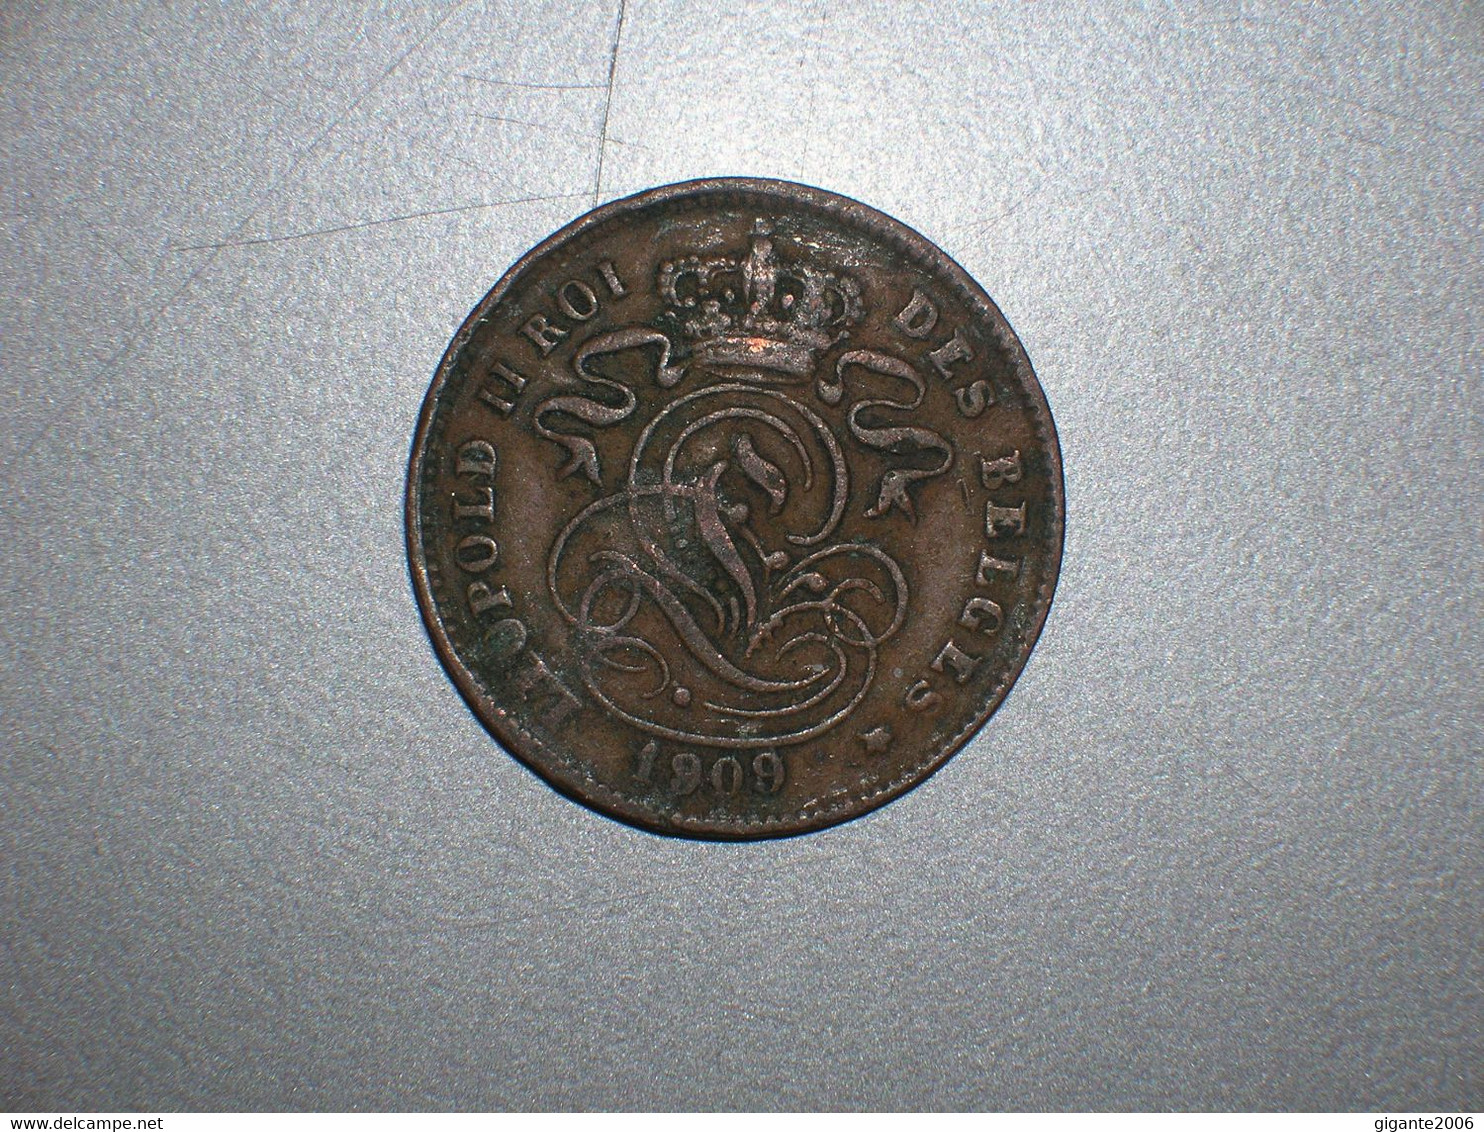 BELGICA 2 CENTIMOS 1909 FR (1658) - 2 Centimes